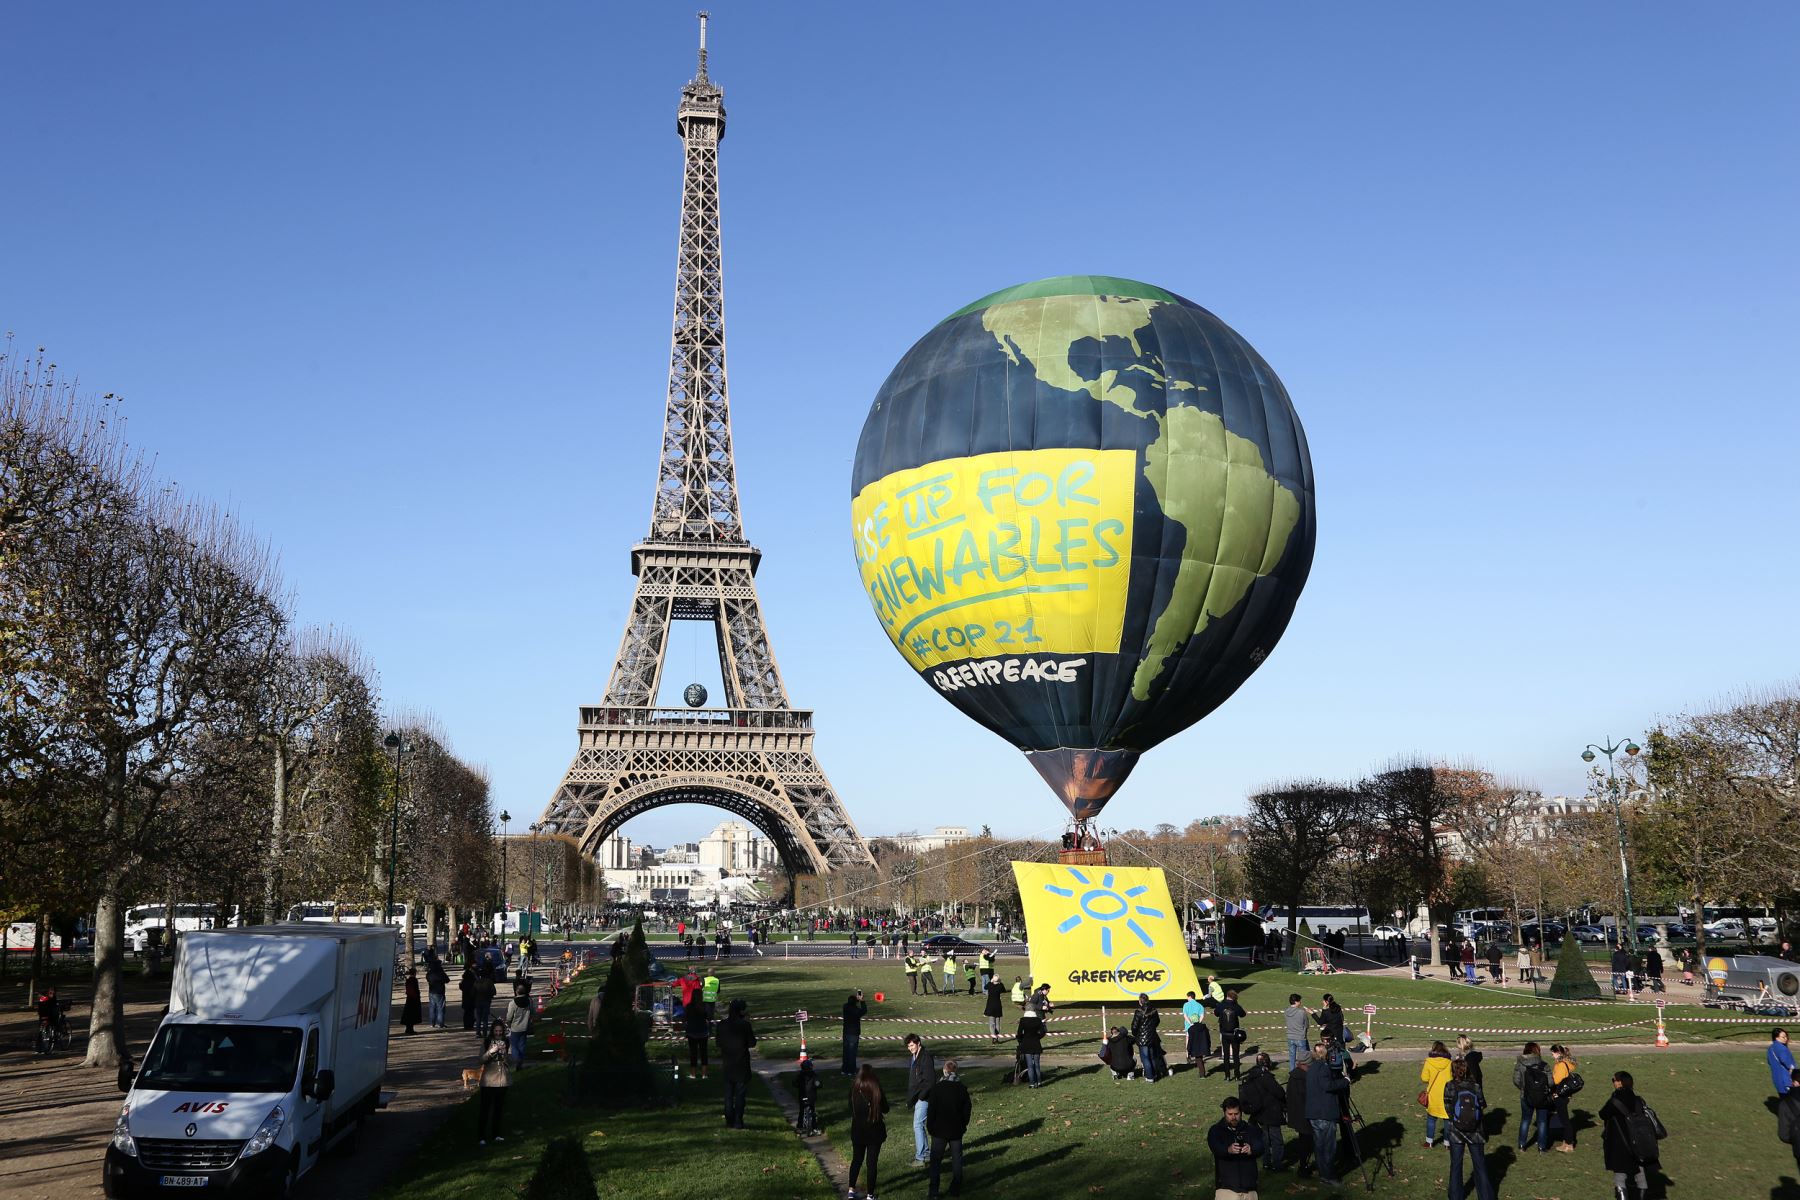 Organizaciones a favor del clima se preparan para la Conferencia de las Naciones Unidas sobre el Cambio Climático COP21 en París. Foto: AFP